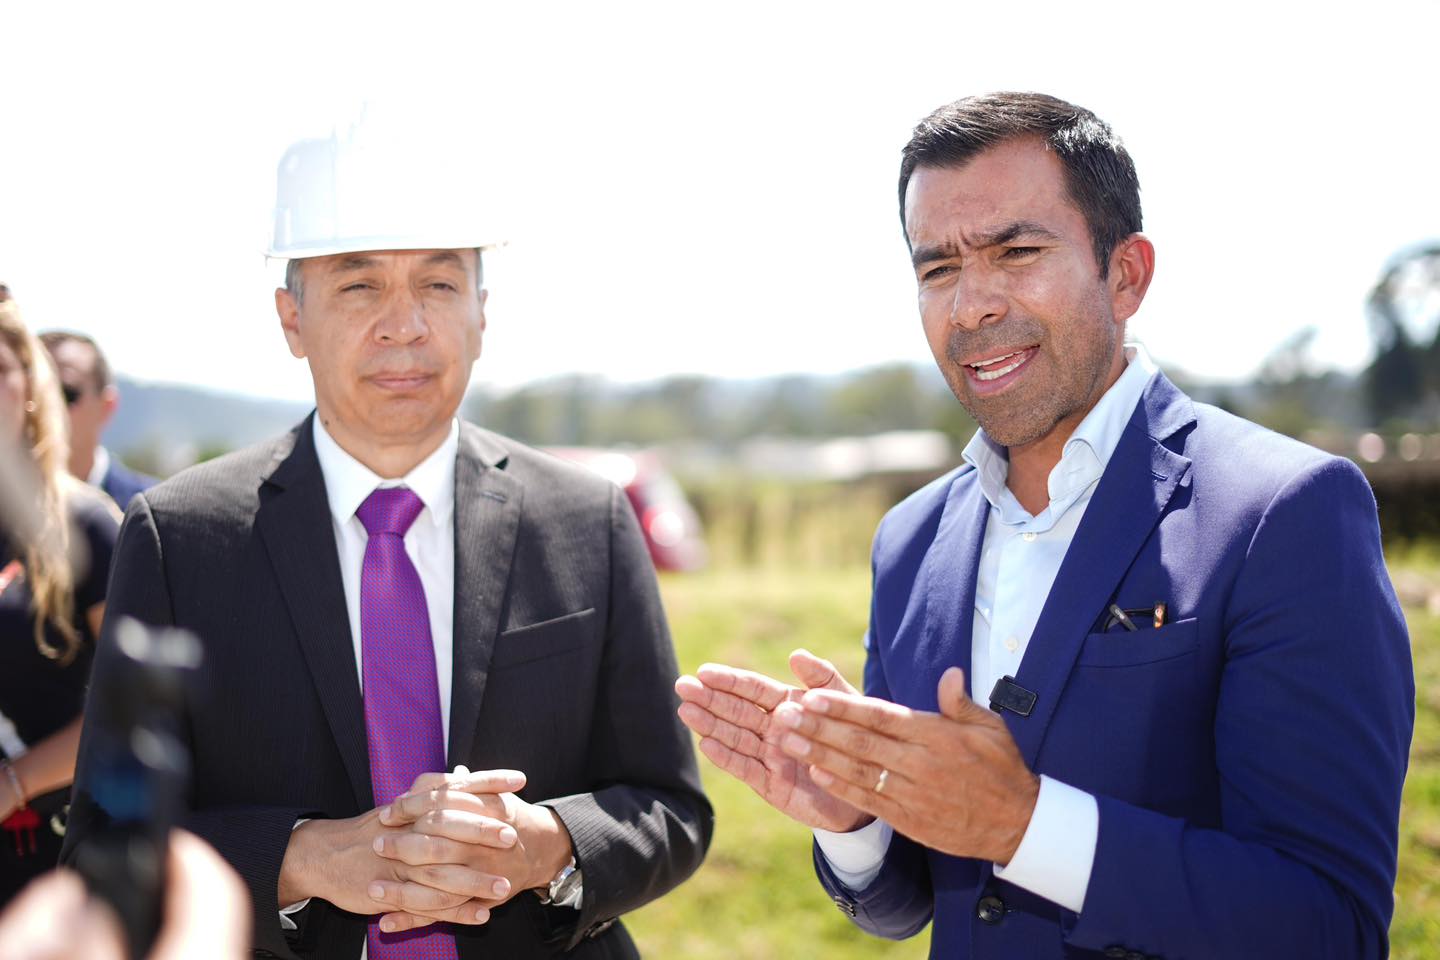 Mintransporte y gobernador de Cundinamarca analizan proyectos conjuntos para el desarrollo de la región